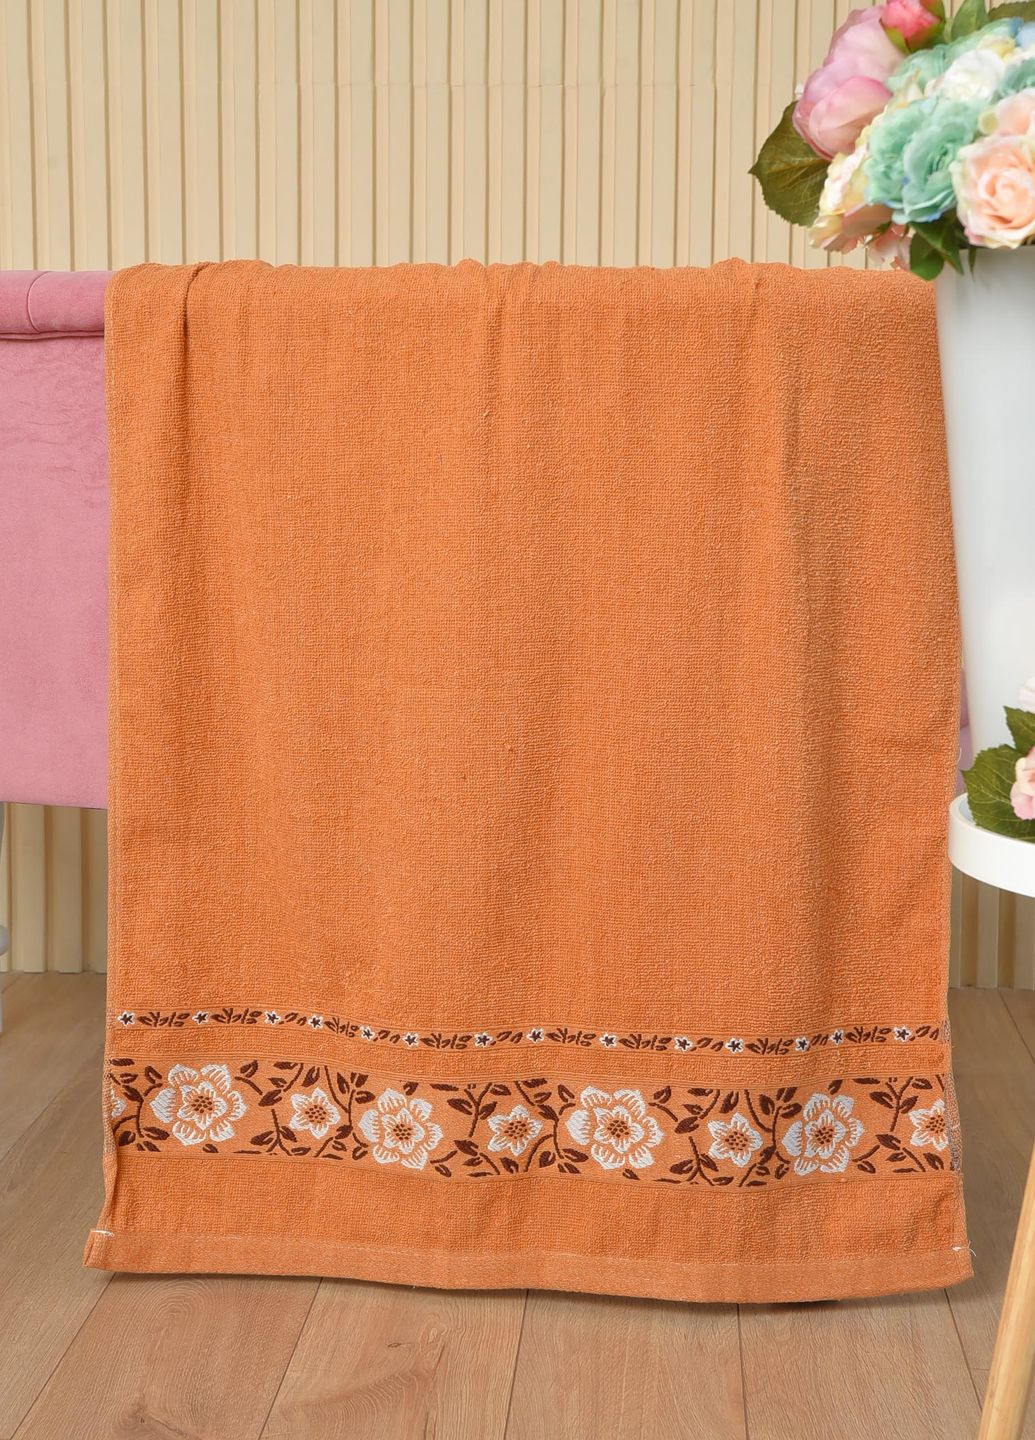 Let's Shop полотенце банное махровое коричневого цвета однотонный коричневый производство - Турция